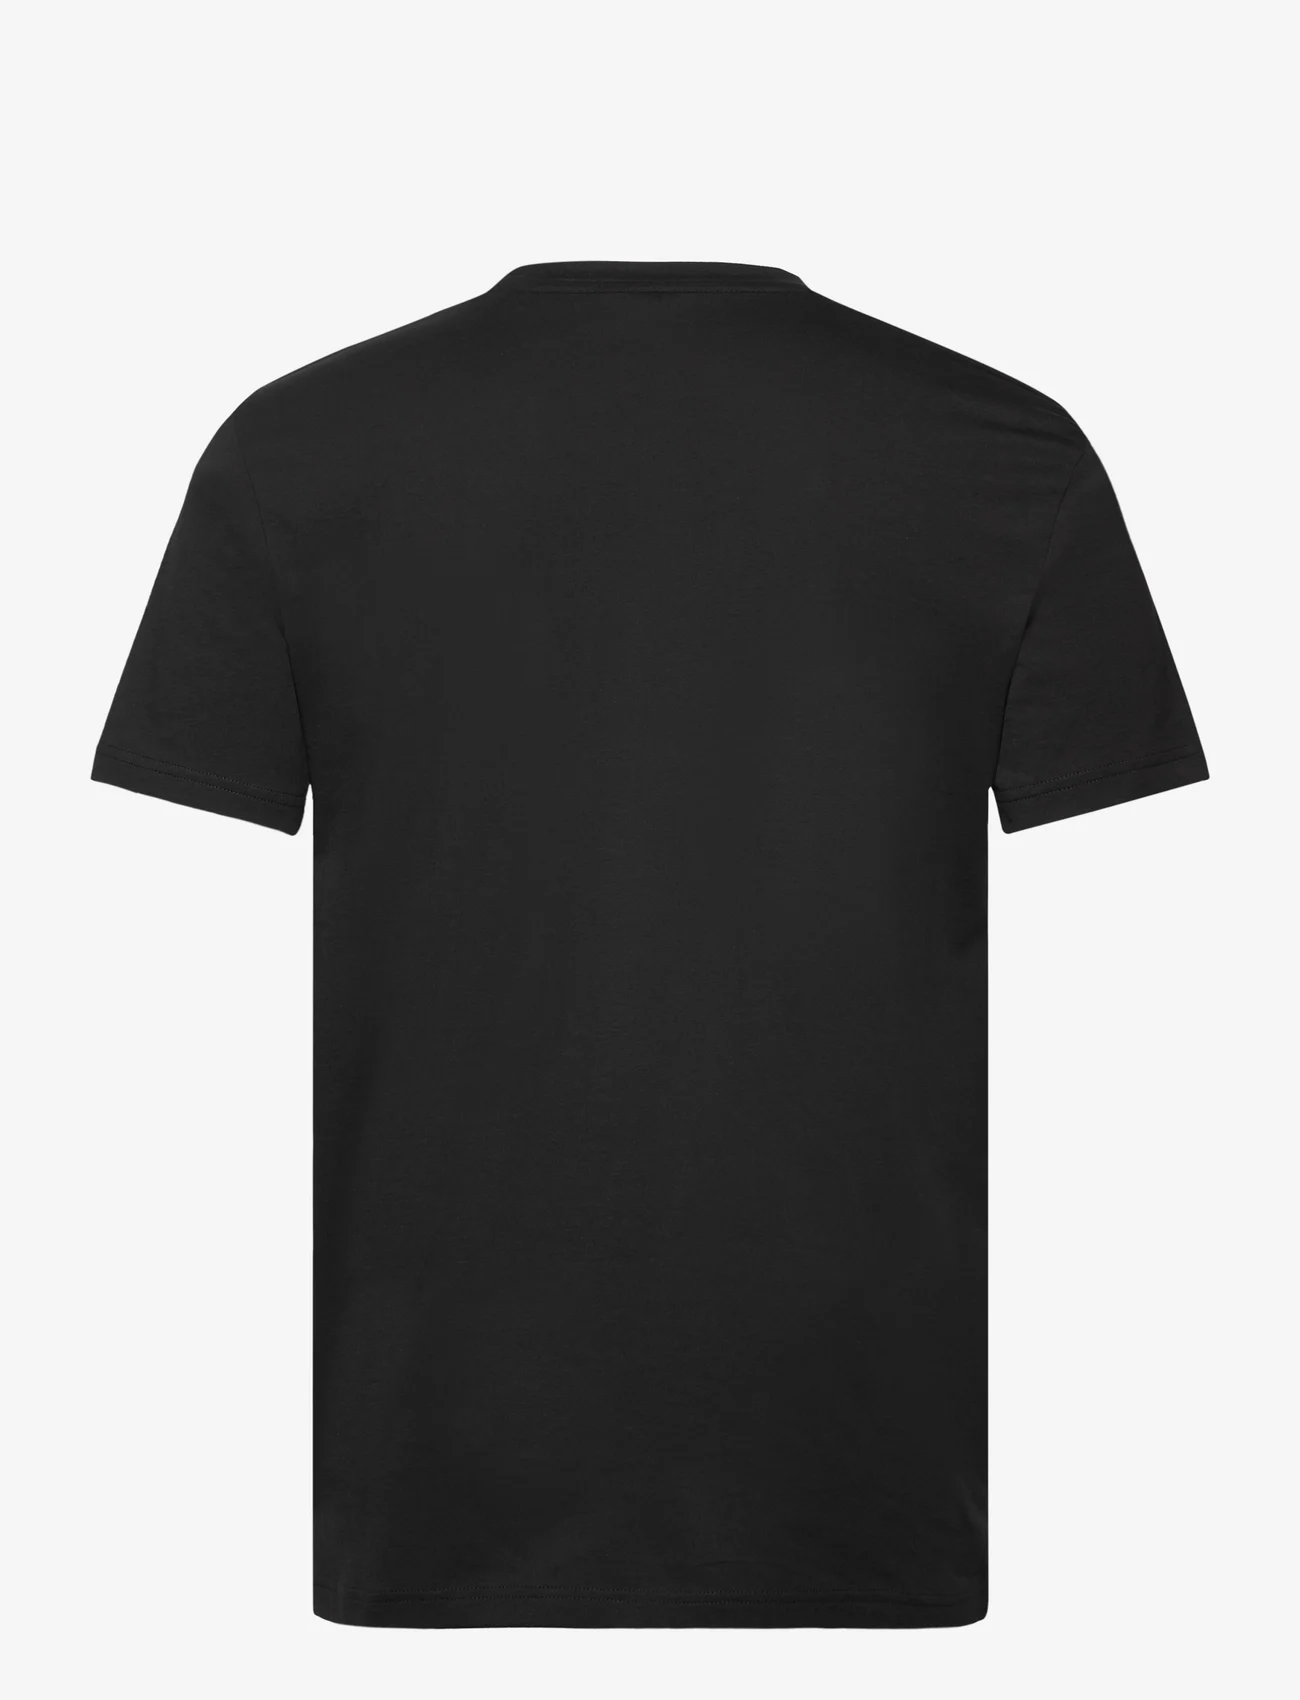 BOSS - Thinking 1 - kortermede t-skjorter - black - 1